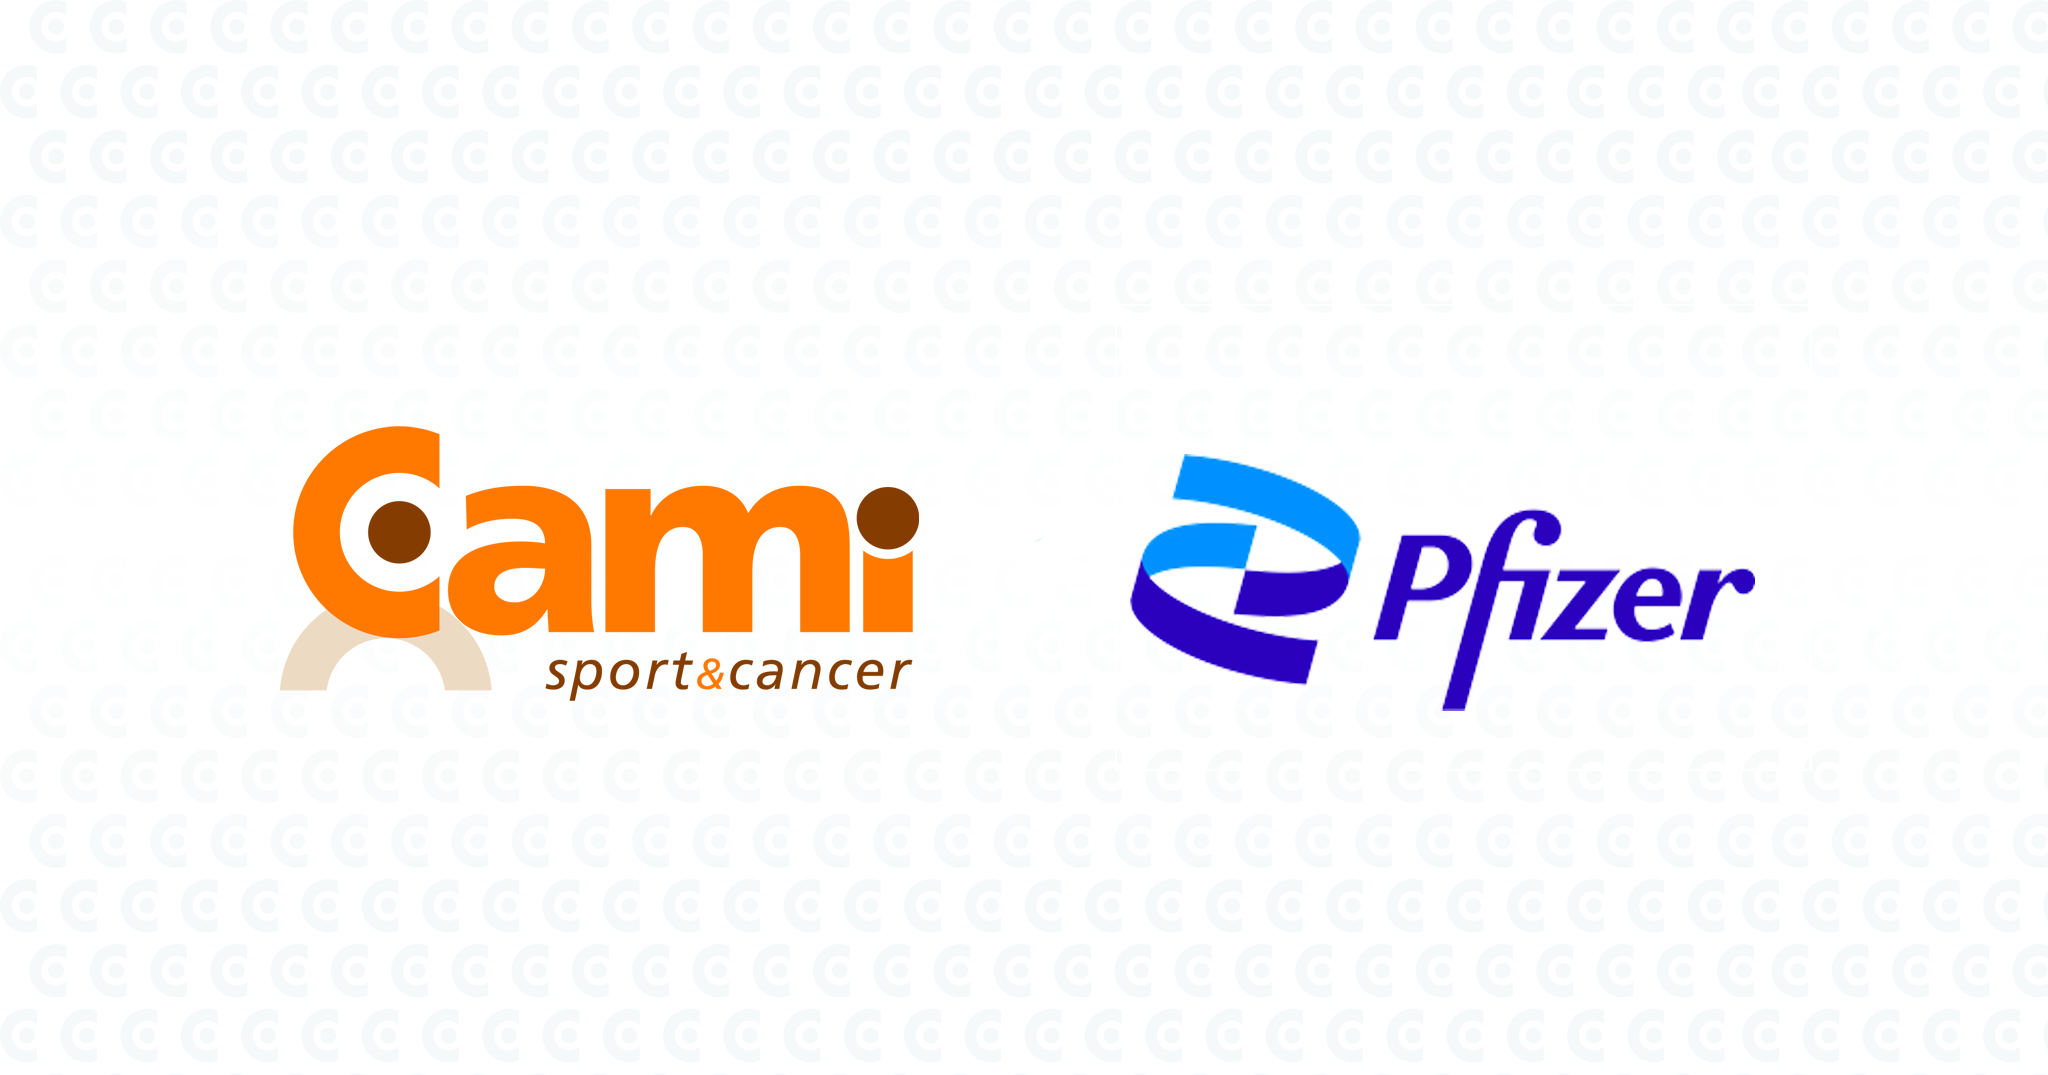 Pfizer apporte son soutien institutionnel à la CAMI Sport & Cancer pour permettre aux patients atteints de cancers hématologiques l’accès à une activité physique thérapeutique et adaptée